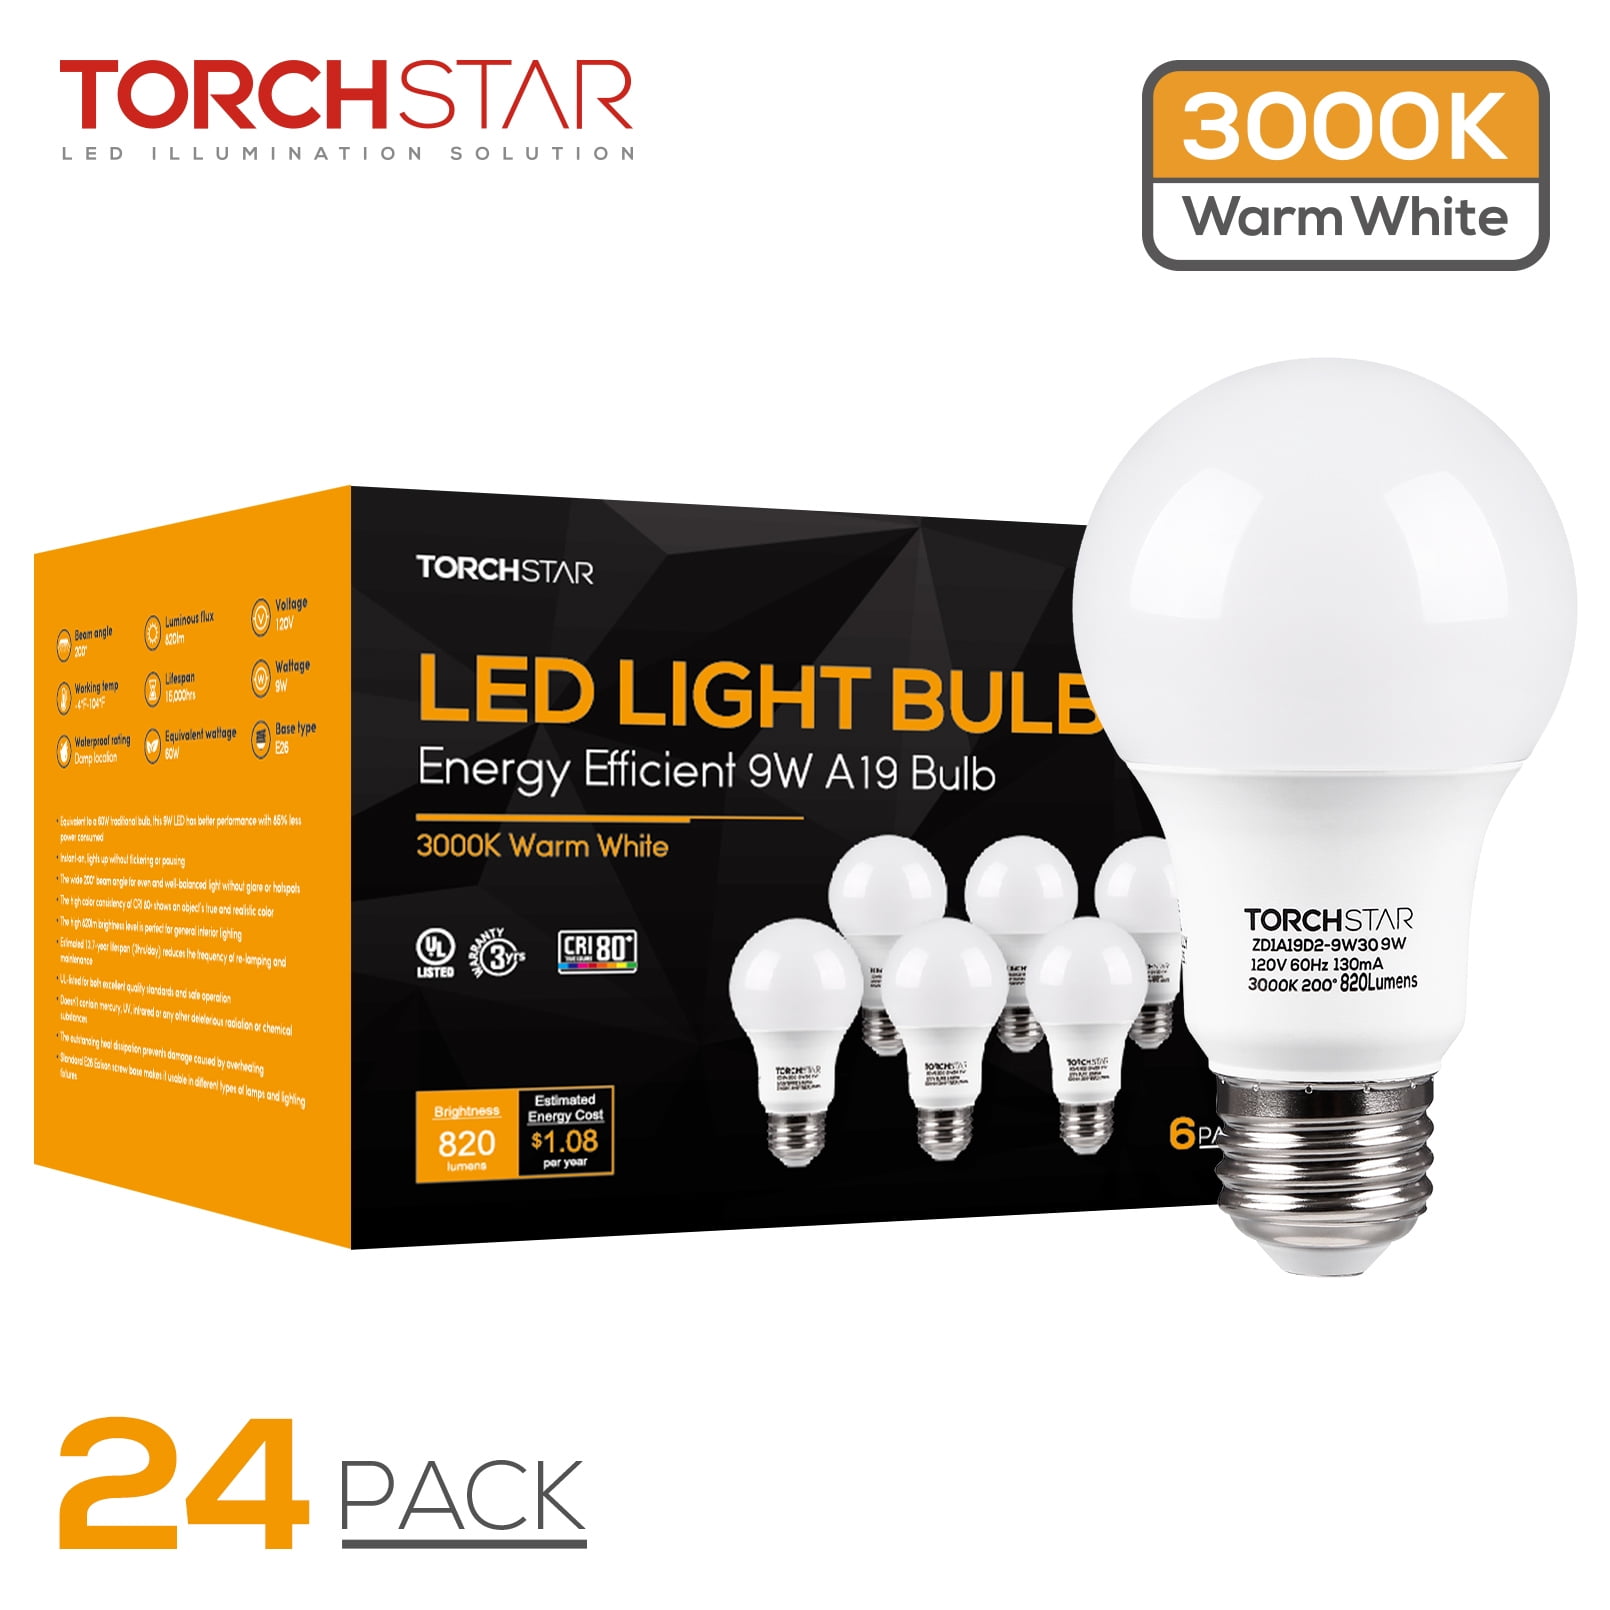 Torchstar 24 Pack LED Light Bulbs 3000K Warm White 120V 9w=60w Non-Dimmable E26 Medium Screw Base